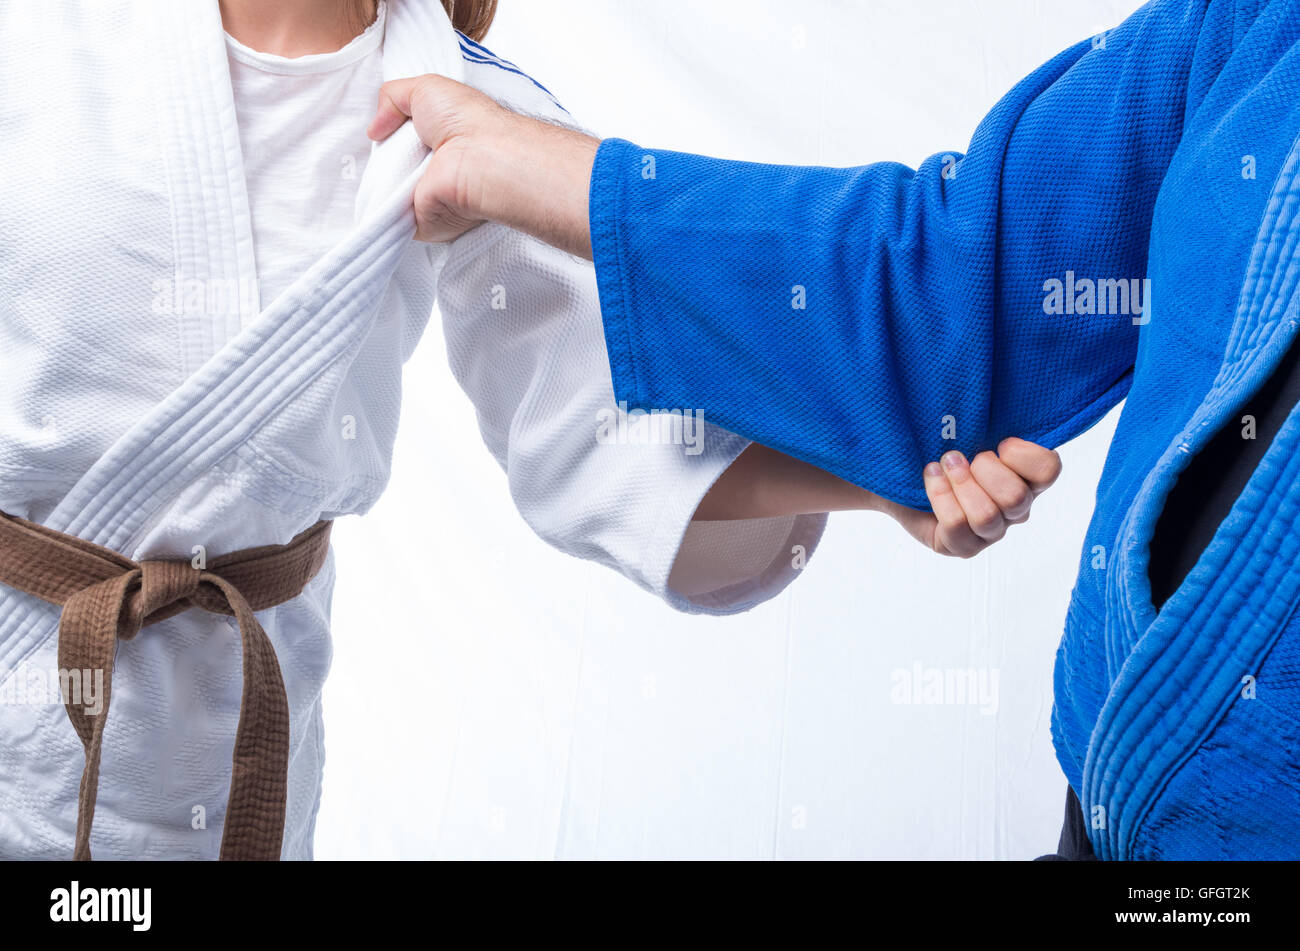 La préhension de Judo ceinture marron de judo féminin entre son sensei et  black belt isolé sur fond blanc Photo Stock - Alamy